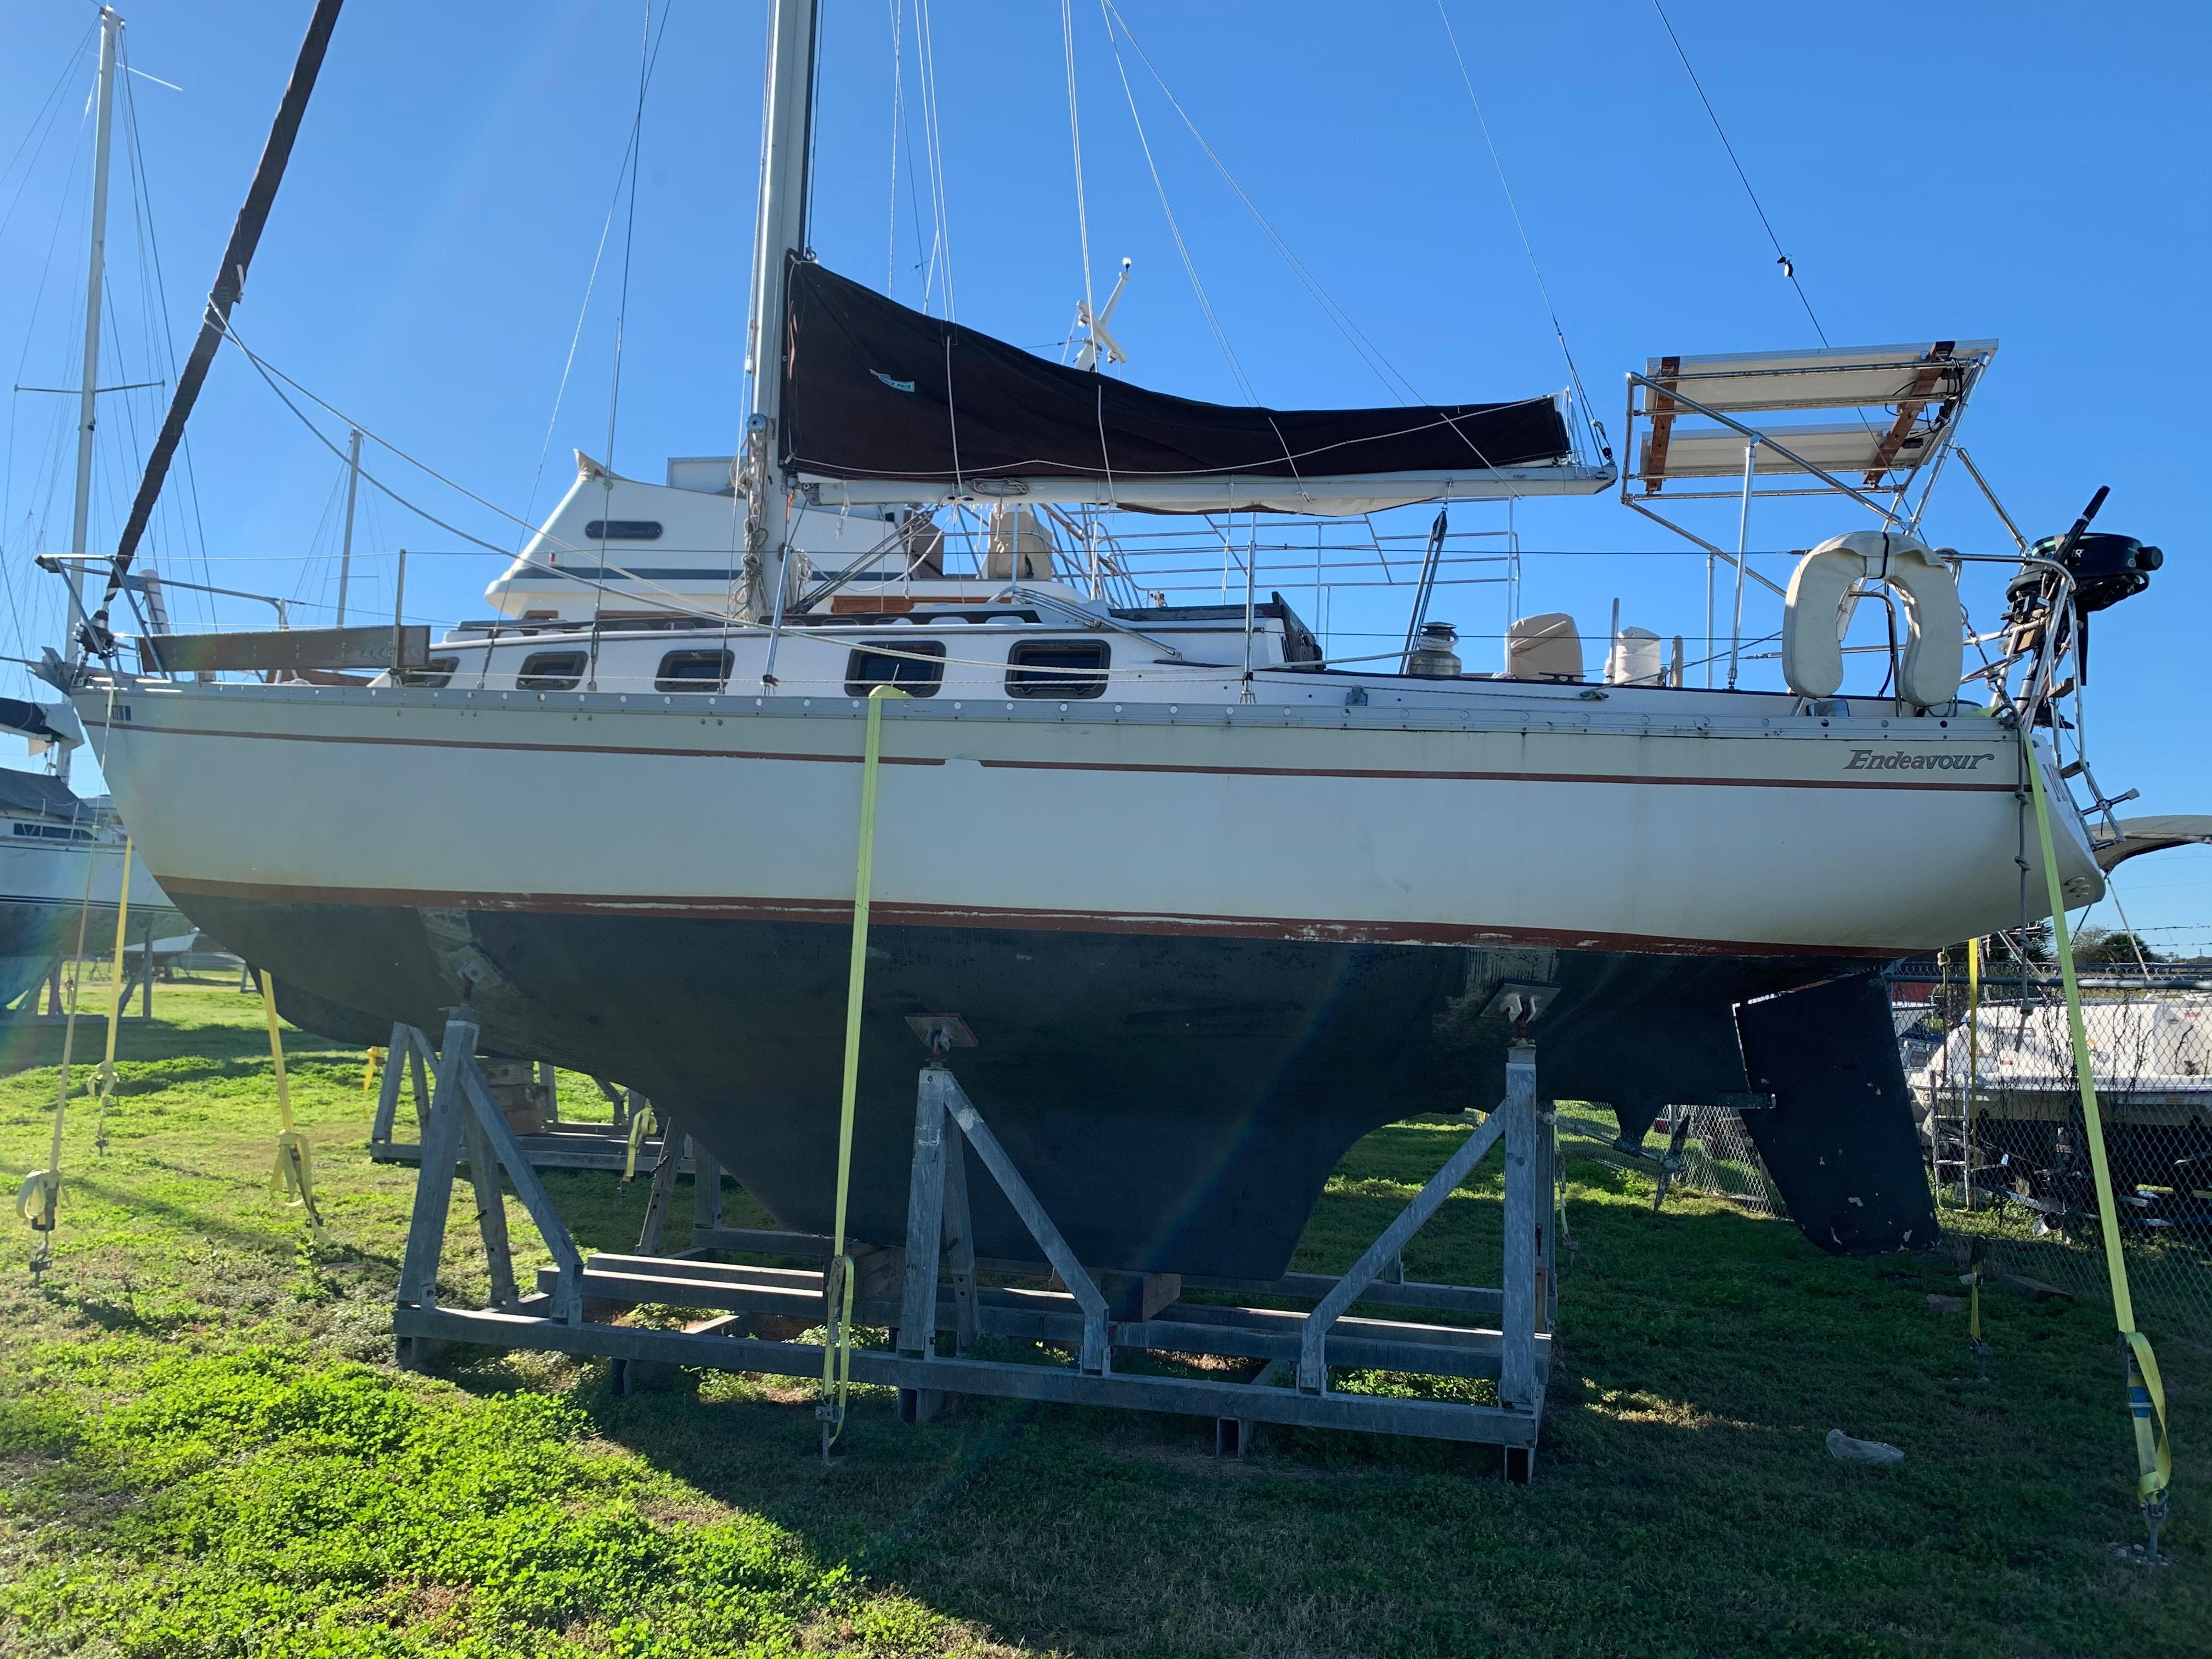 32 ft endeavor sailboat